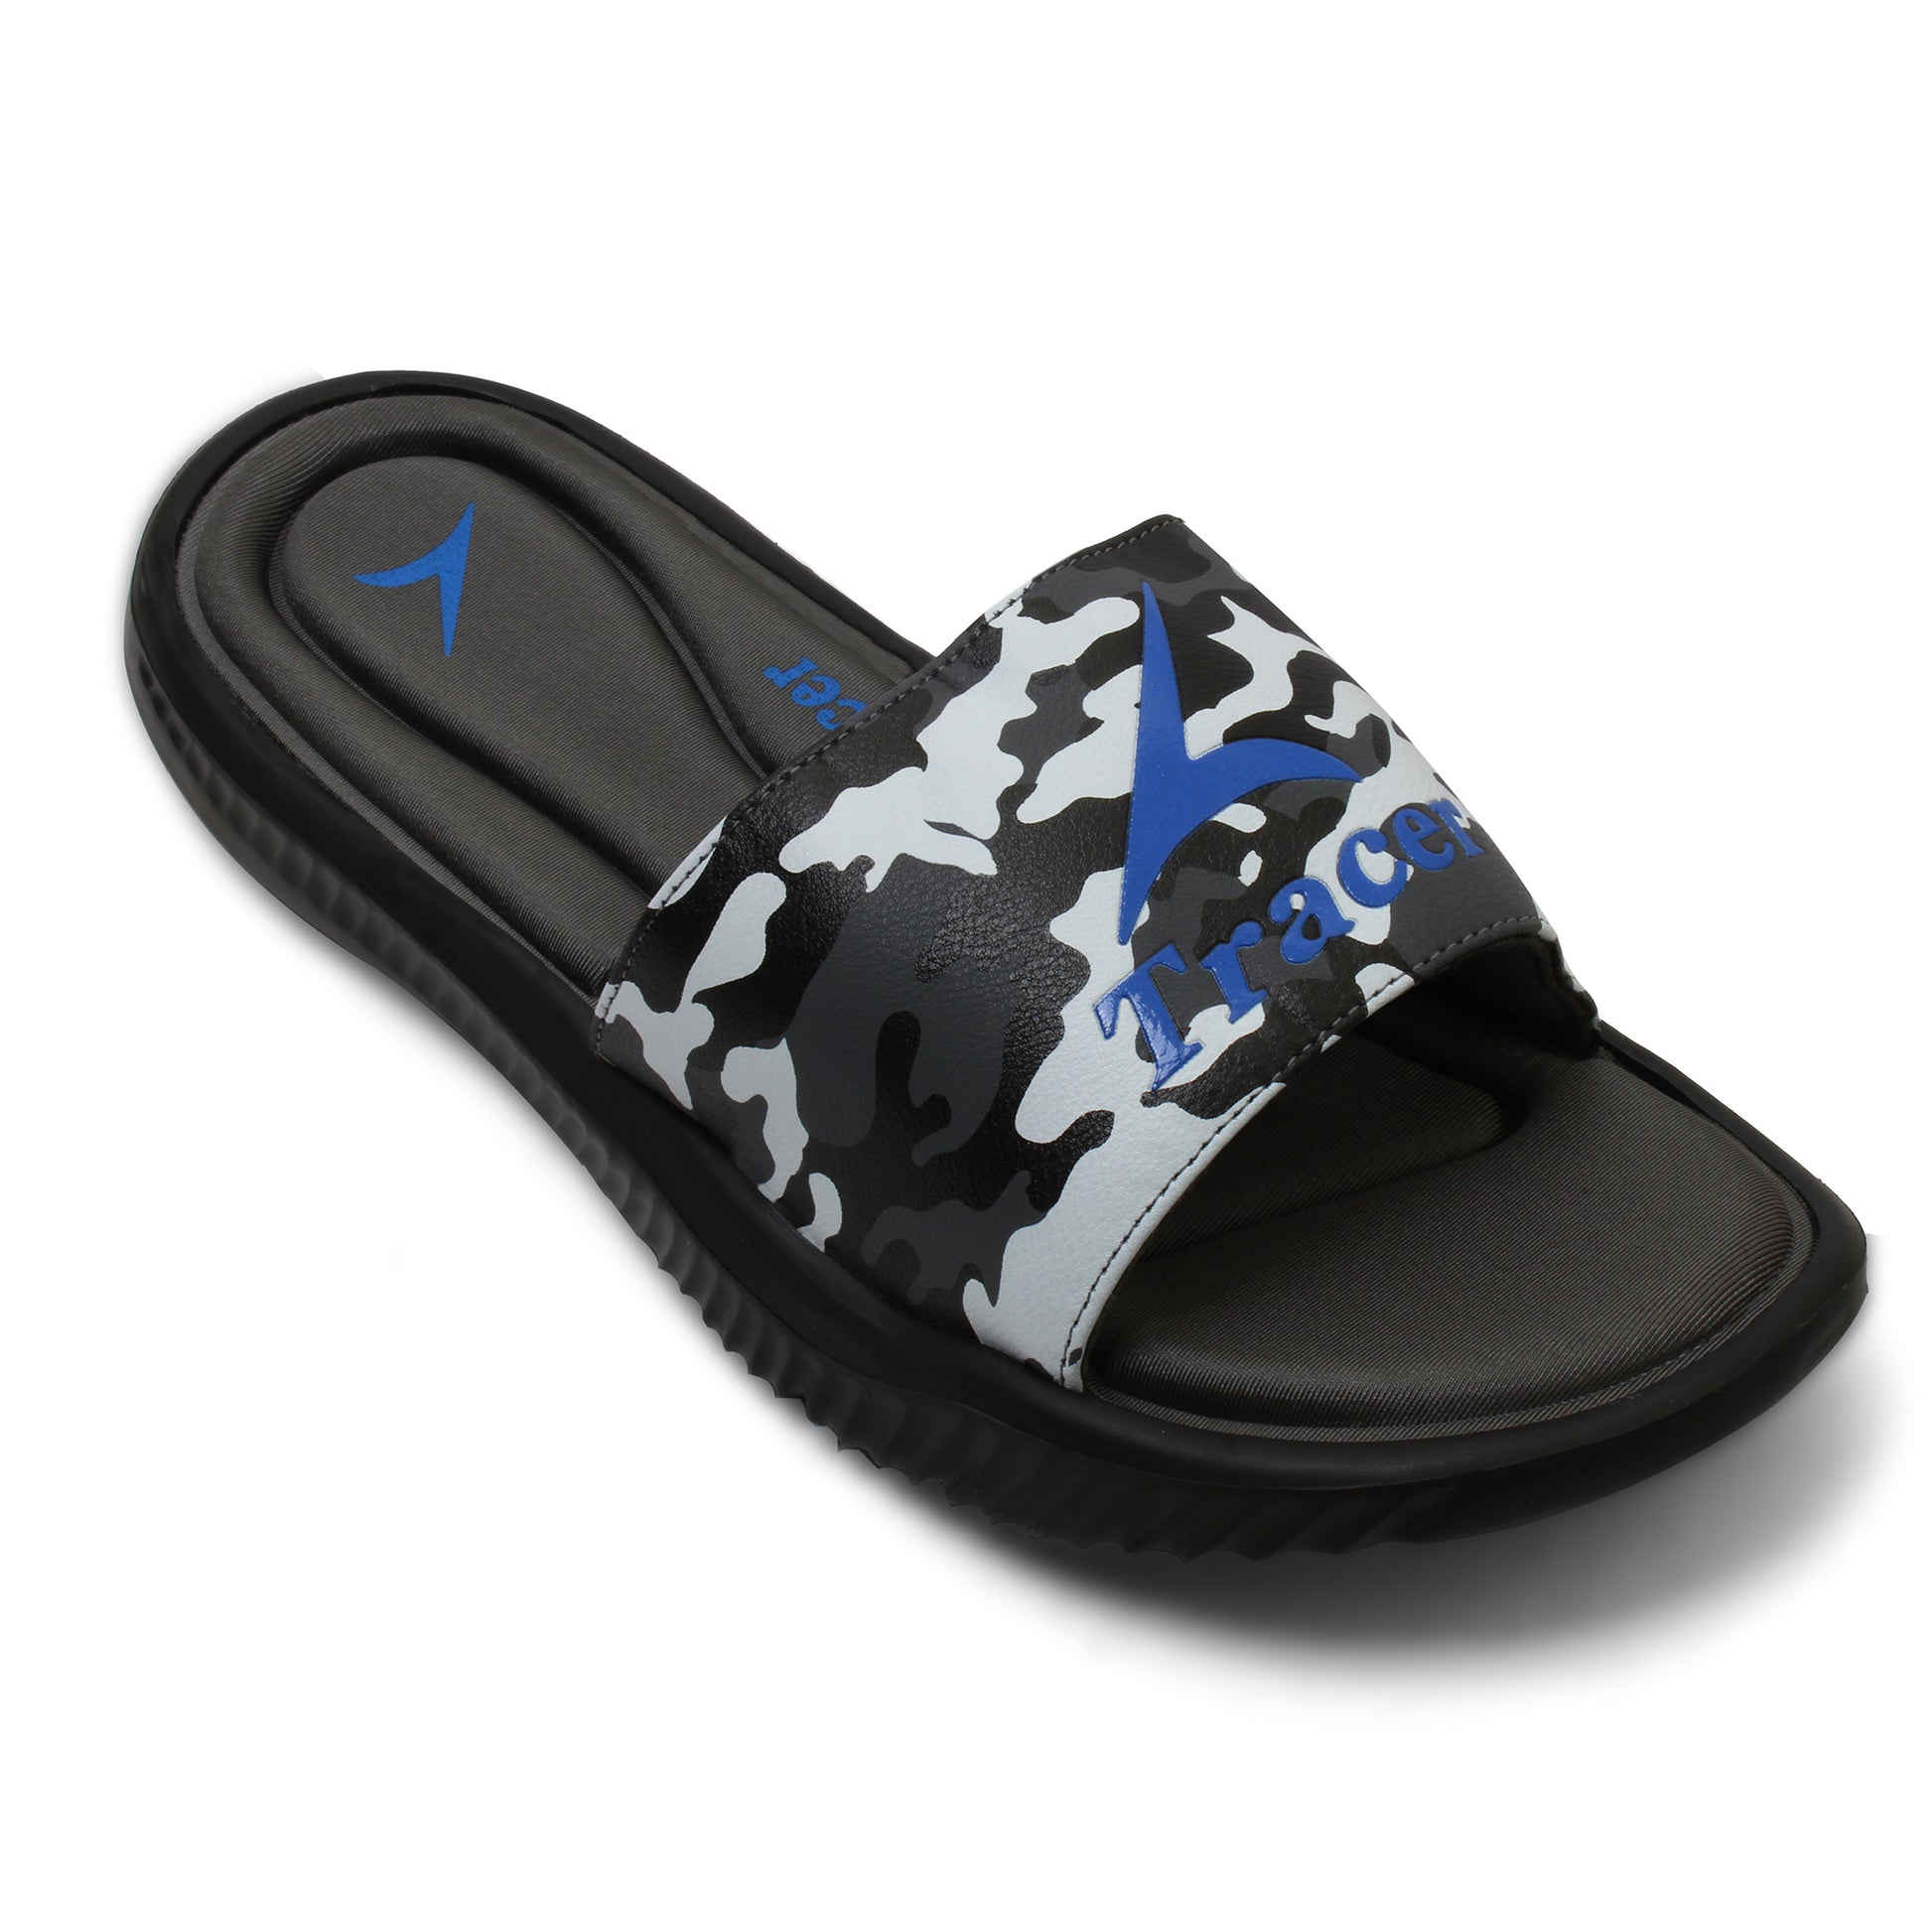  Flat Slippers For Men's R.Blue